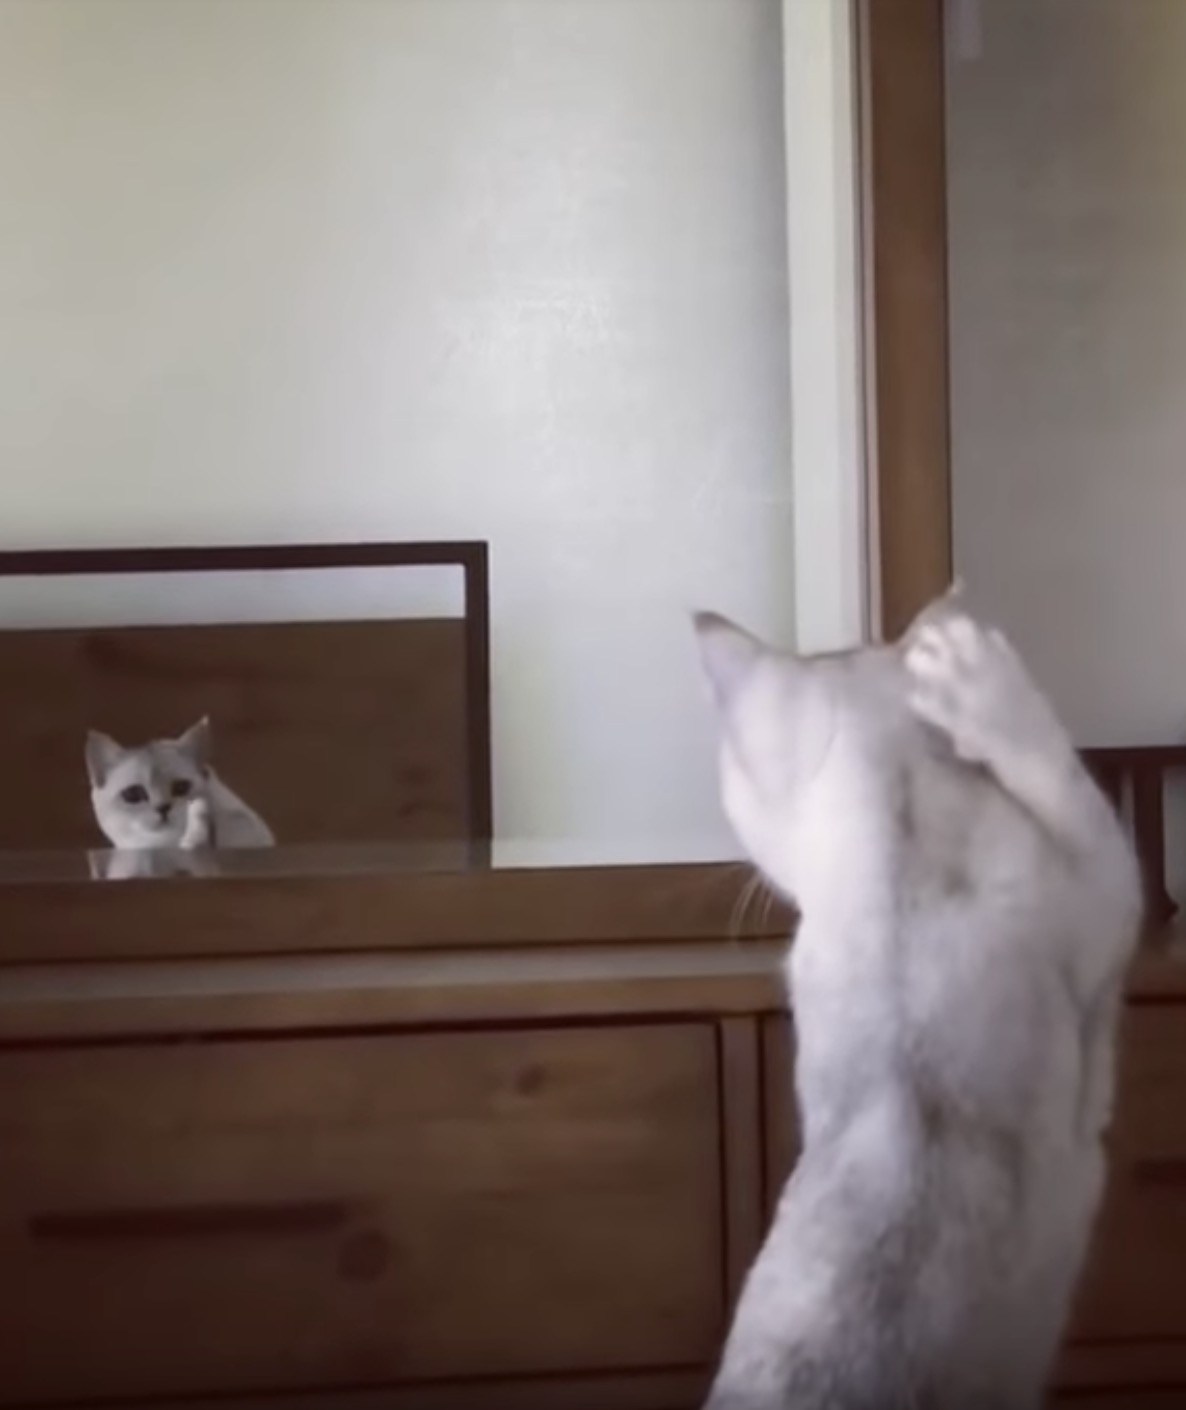 鏡に映る自分の姿に驚く猫、耳の実存を初めて確認